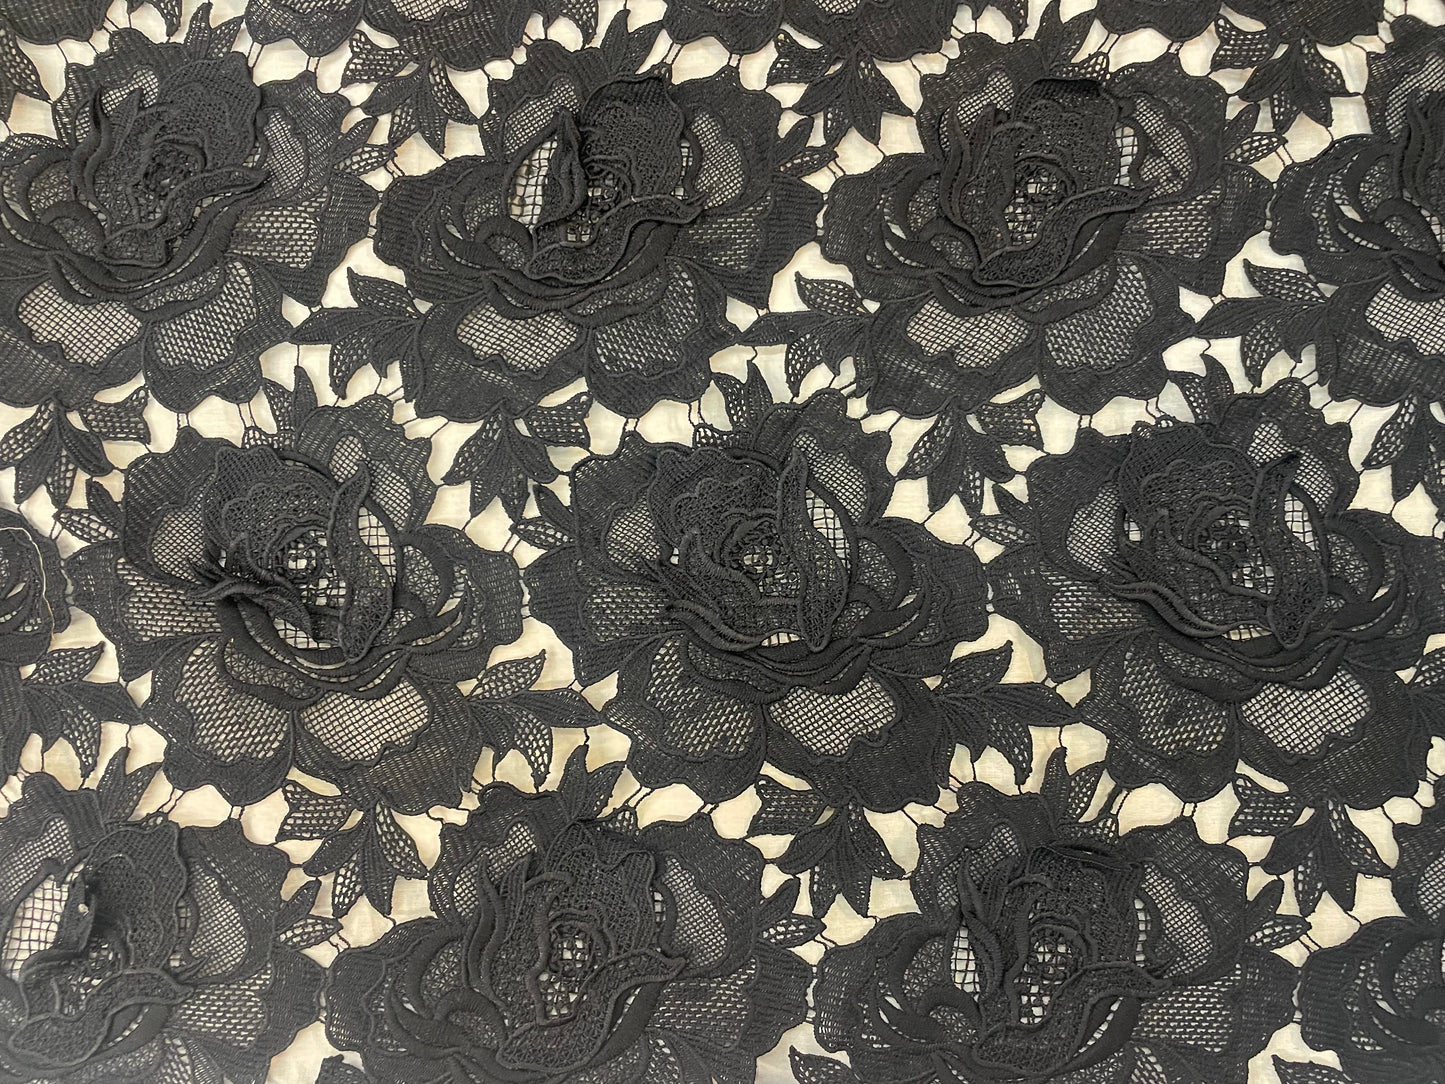 Rose Floral Appliqued Cotton Lace - Jet Black